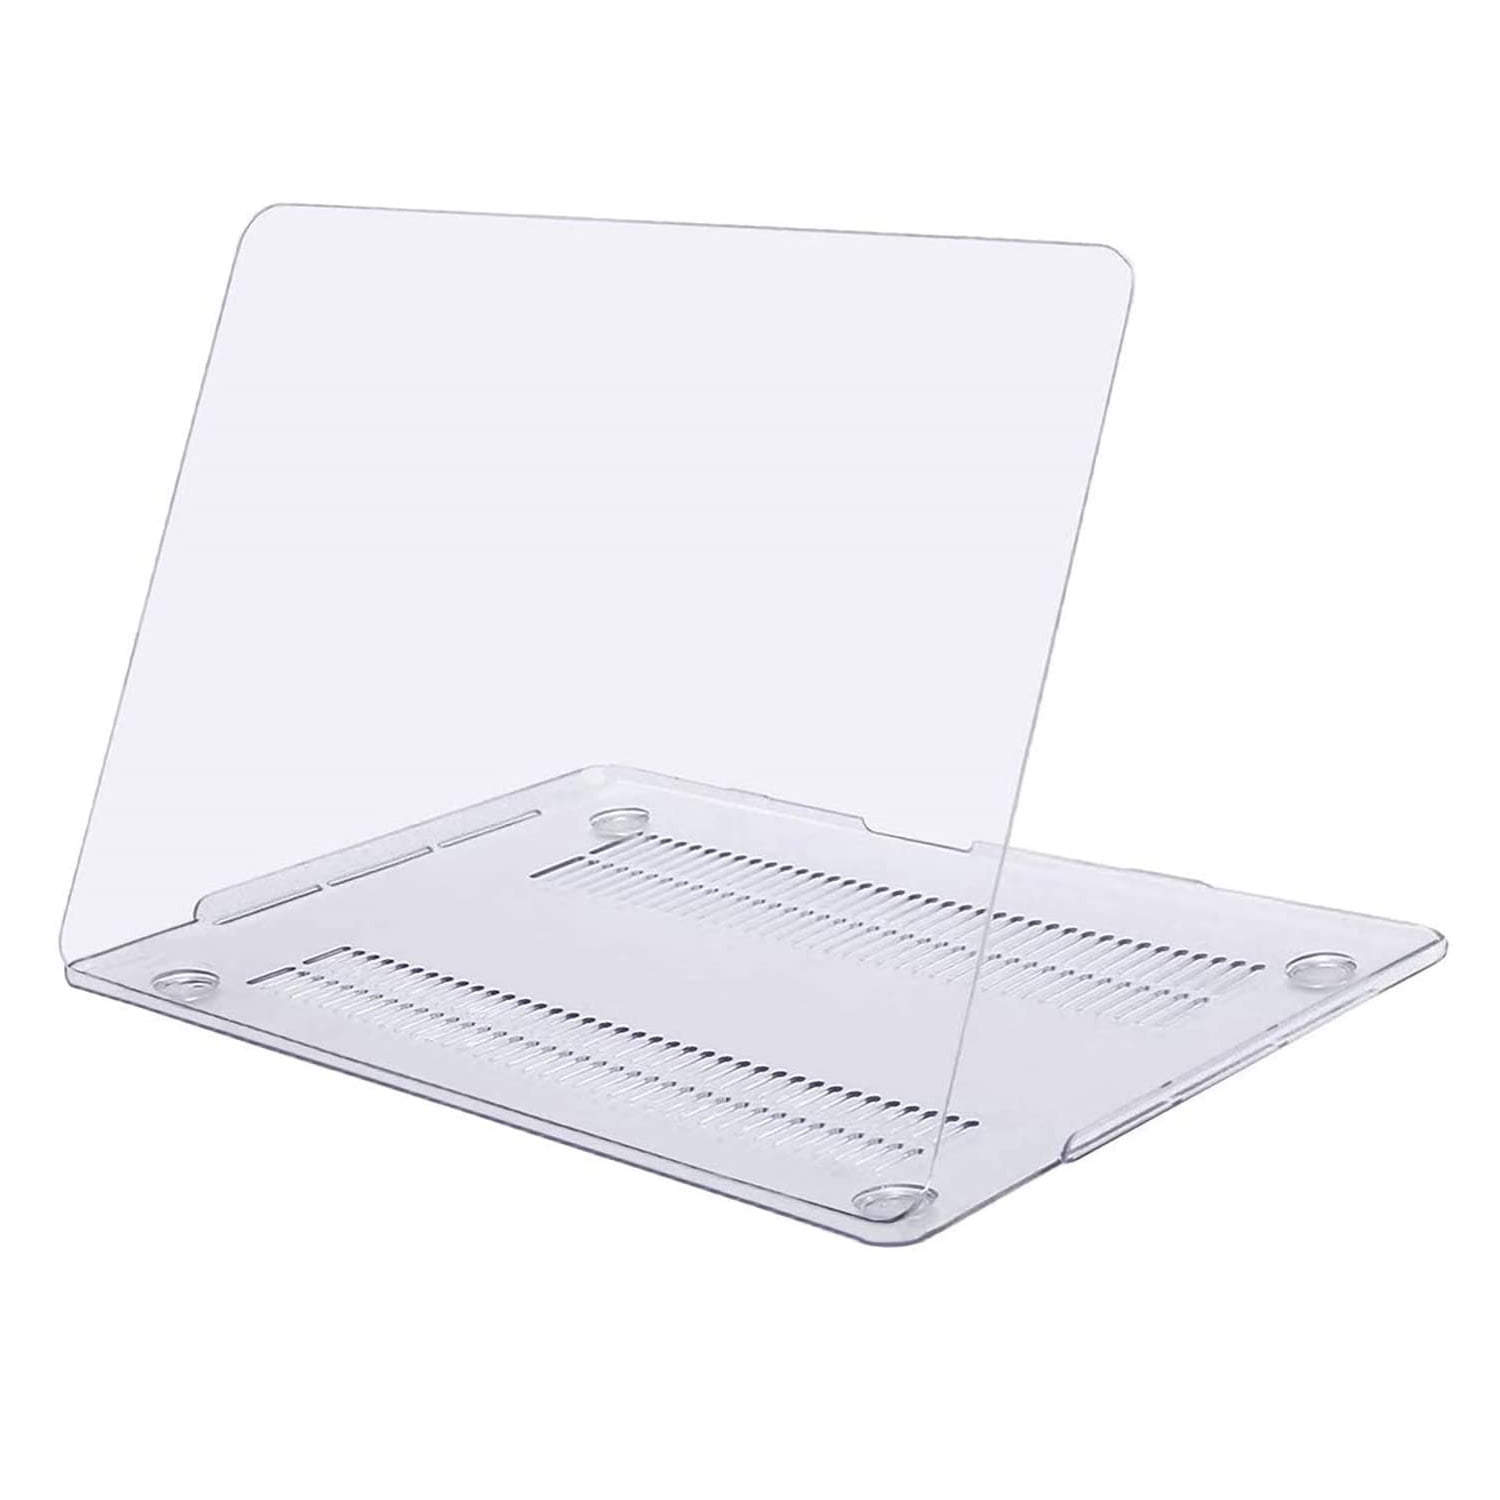 Gelb Plastik Hartschale Hülle Kompatibel mit MacBook Pro 13 Zoll mit/ohne Touch Bar MOSISO Hülle Kompatibel mit MacBook Pro 13 2019 2018 2017 2016 Freisetzung A2159/A1989/A1706/A1708